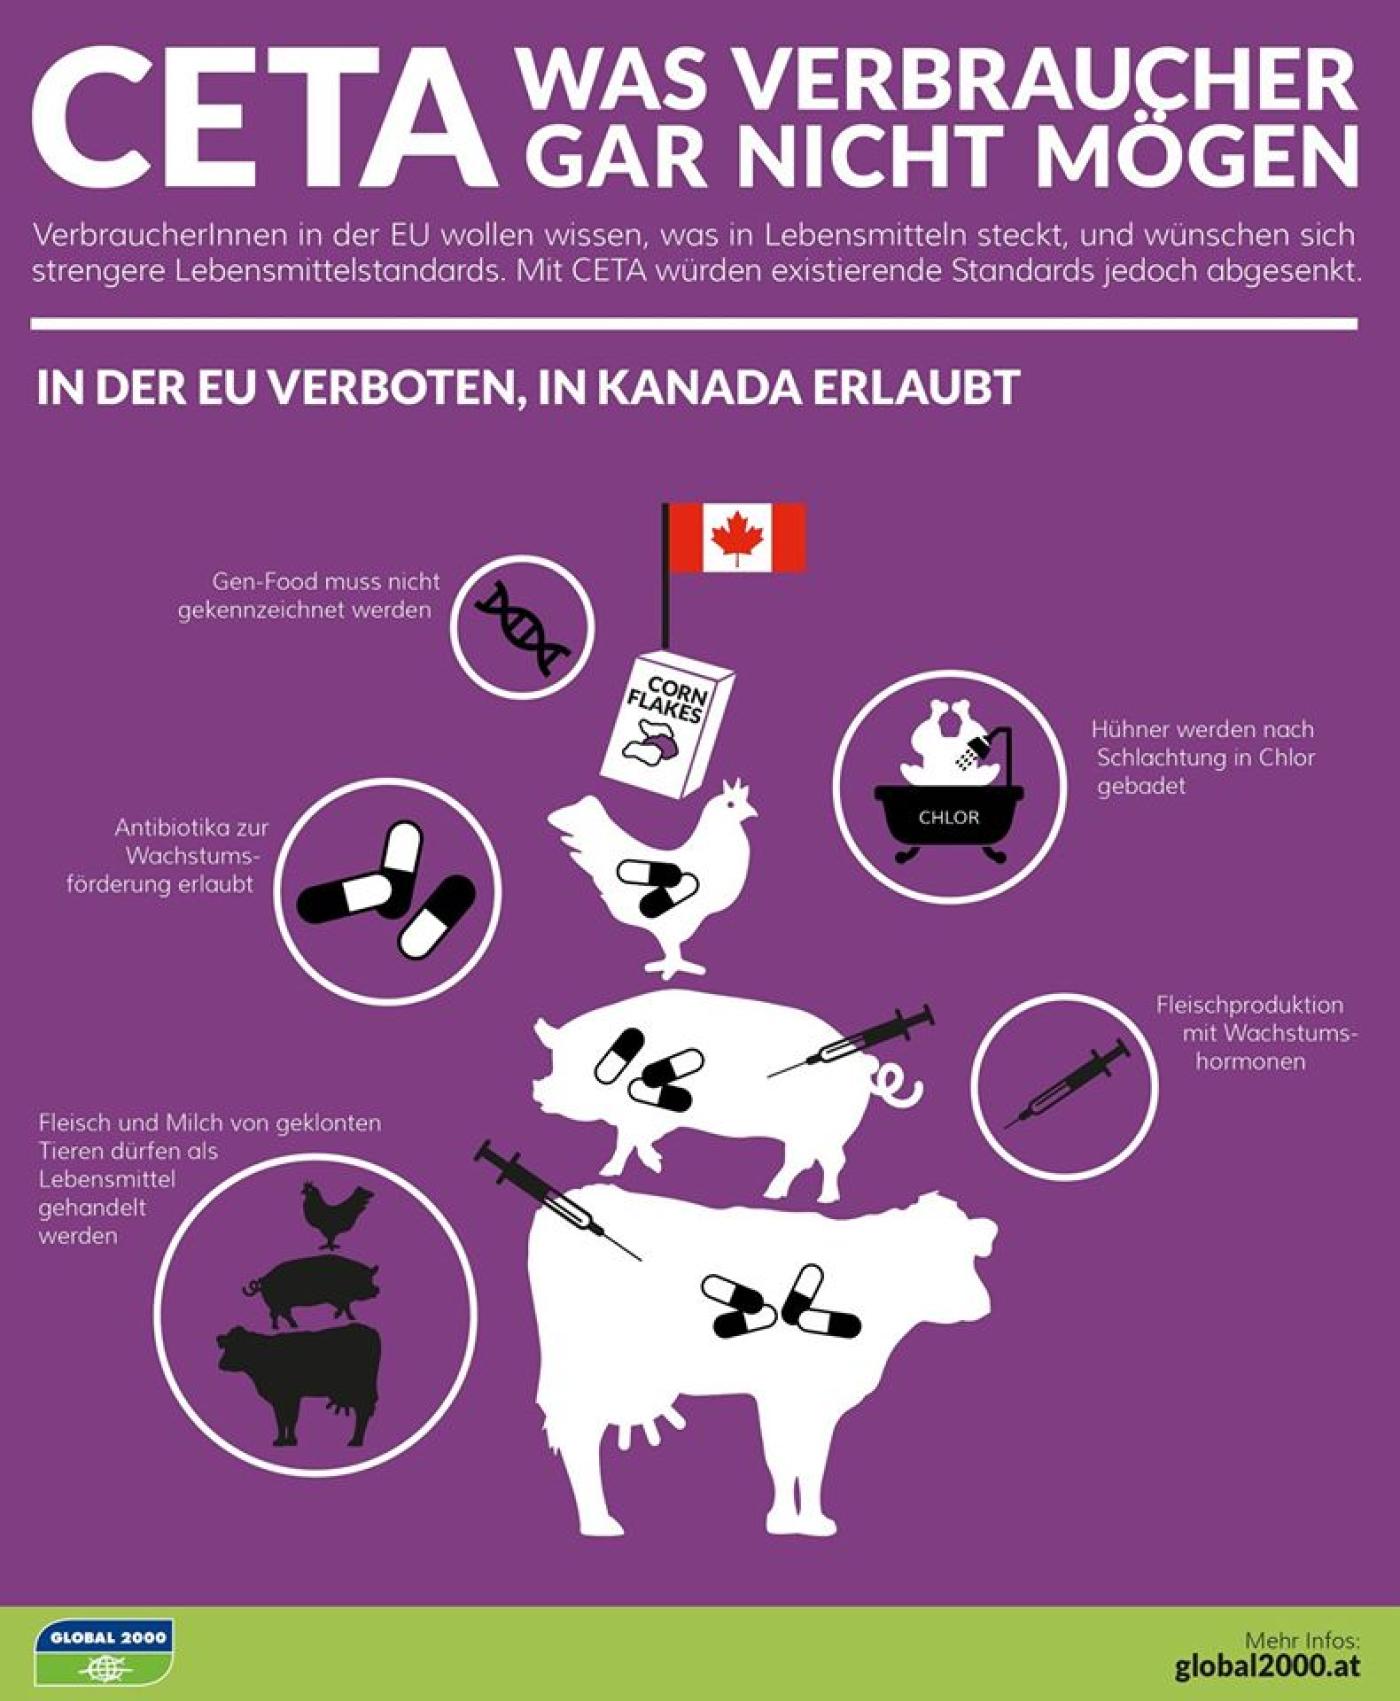 VerbraucherInnen in der EU wollen wissen was in Lebensmitteln steckt und wünschen sich strengere Lebensmittelstandards. Mit CETA werden existierende Standards jedoch abgesenkt. In der EU ist vieles verboten, was in Kanada erlaubt ist.